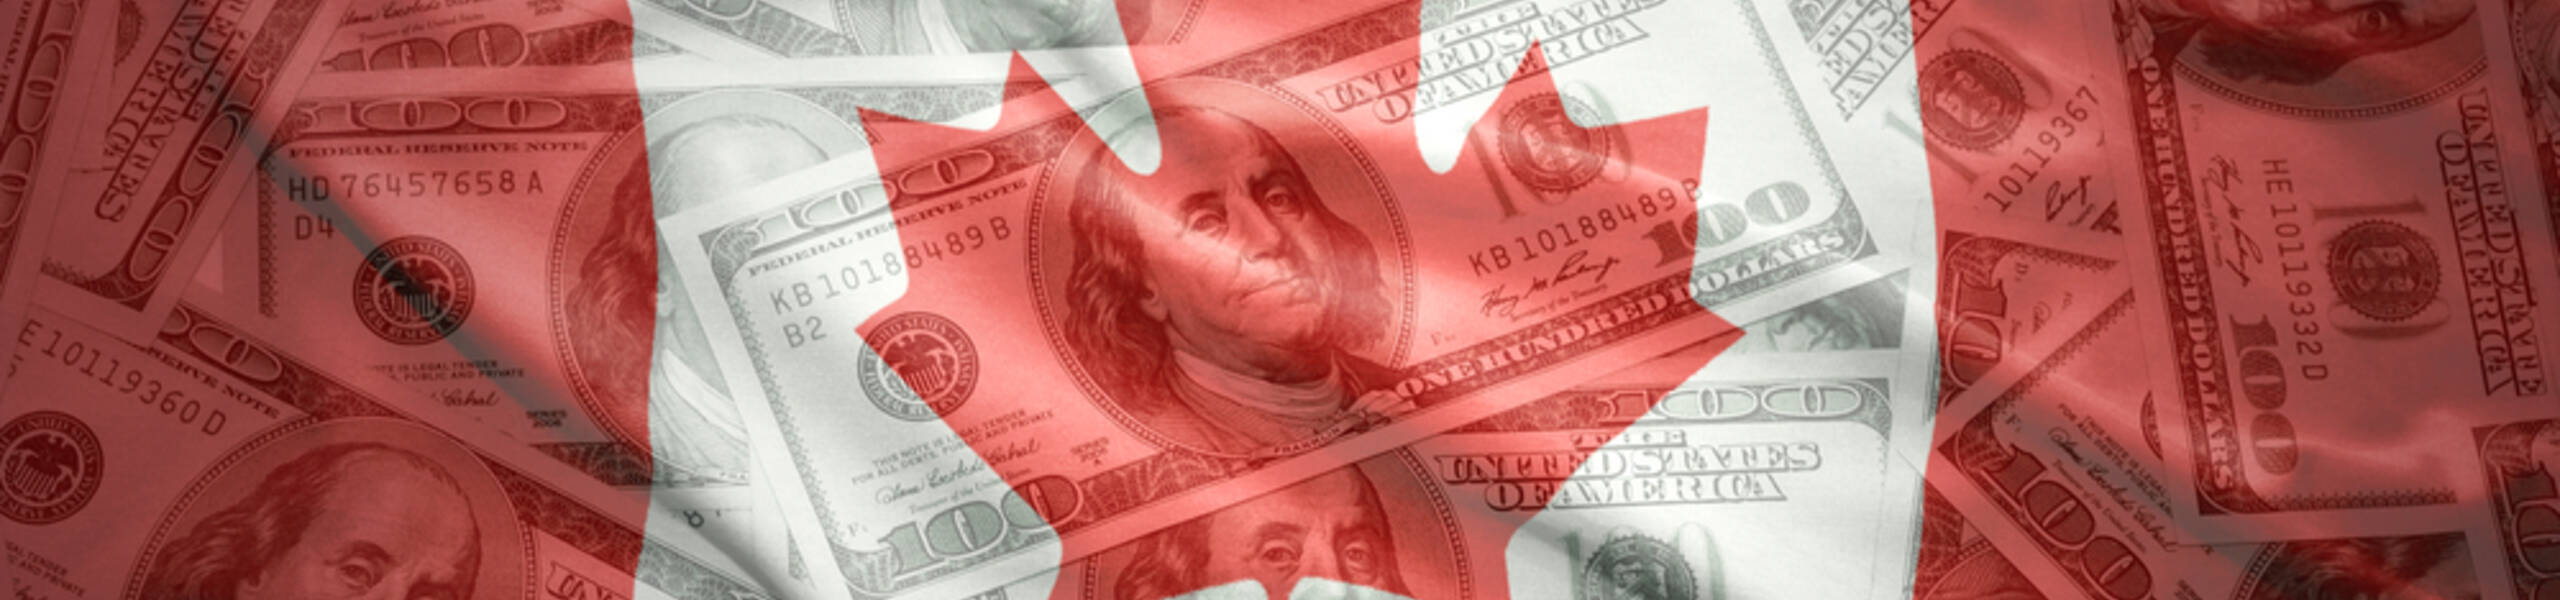 Preços do petróleo atrapalham a fuga da moeda canadense 